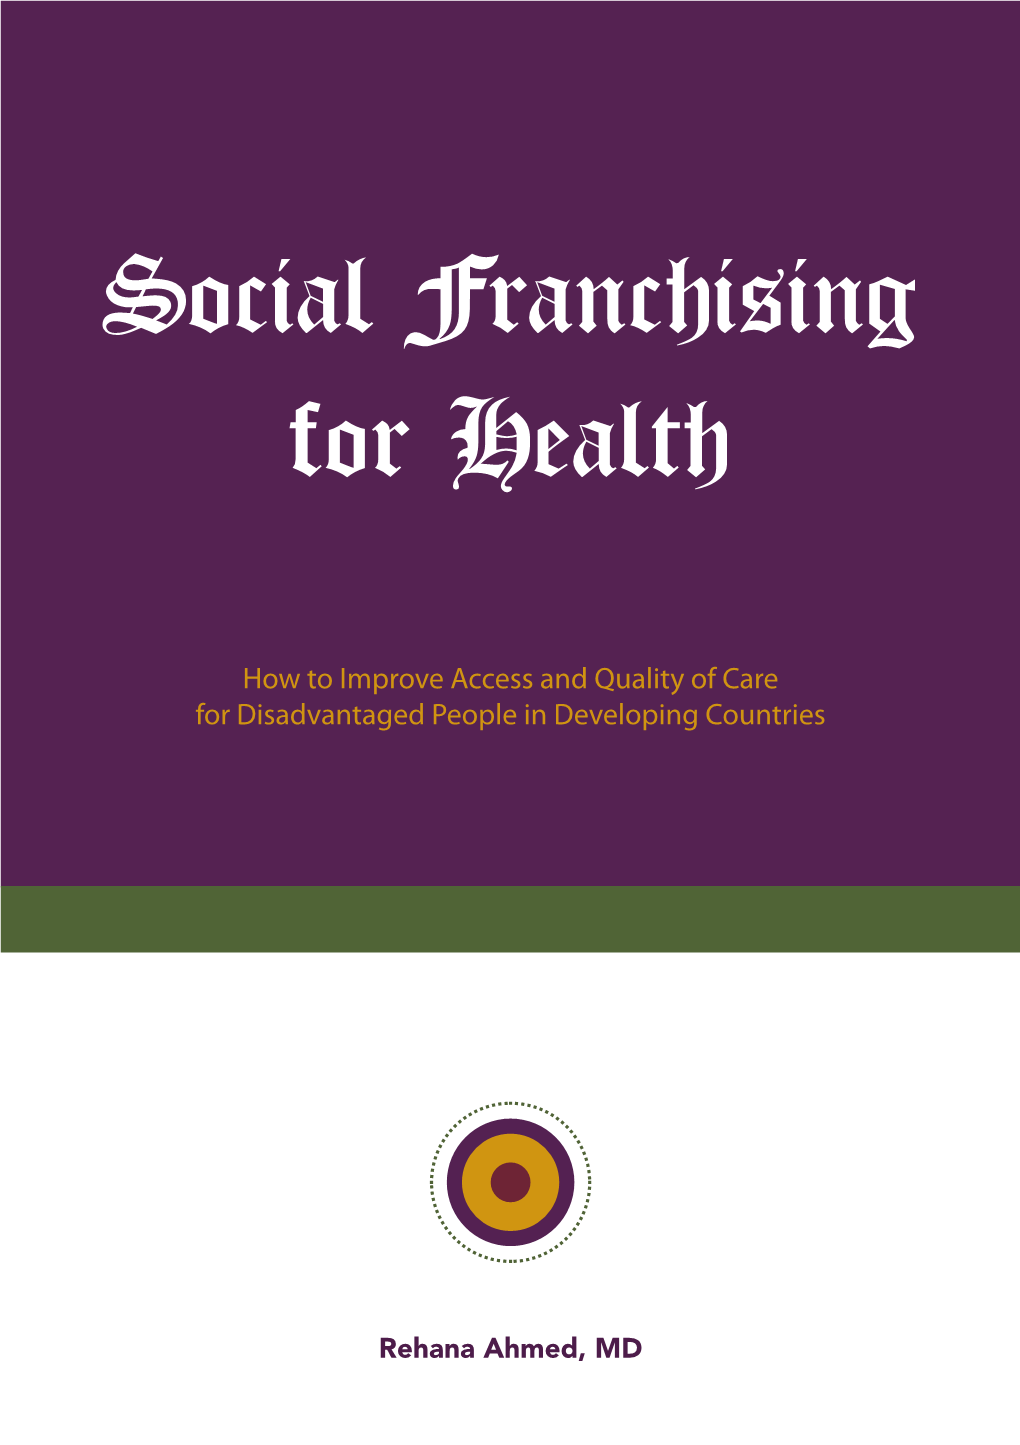 Social Franchising for Health